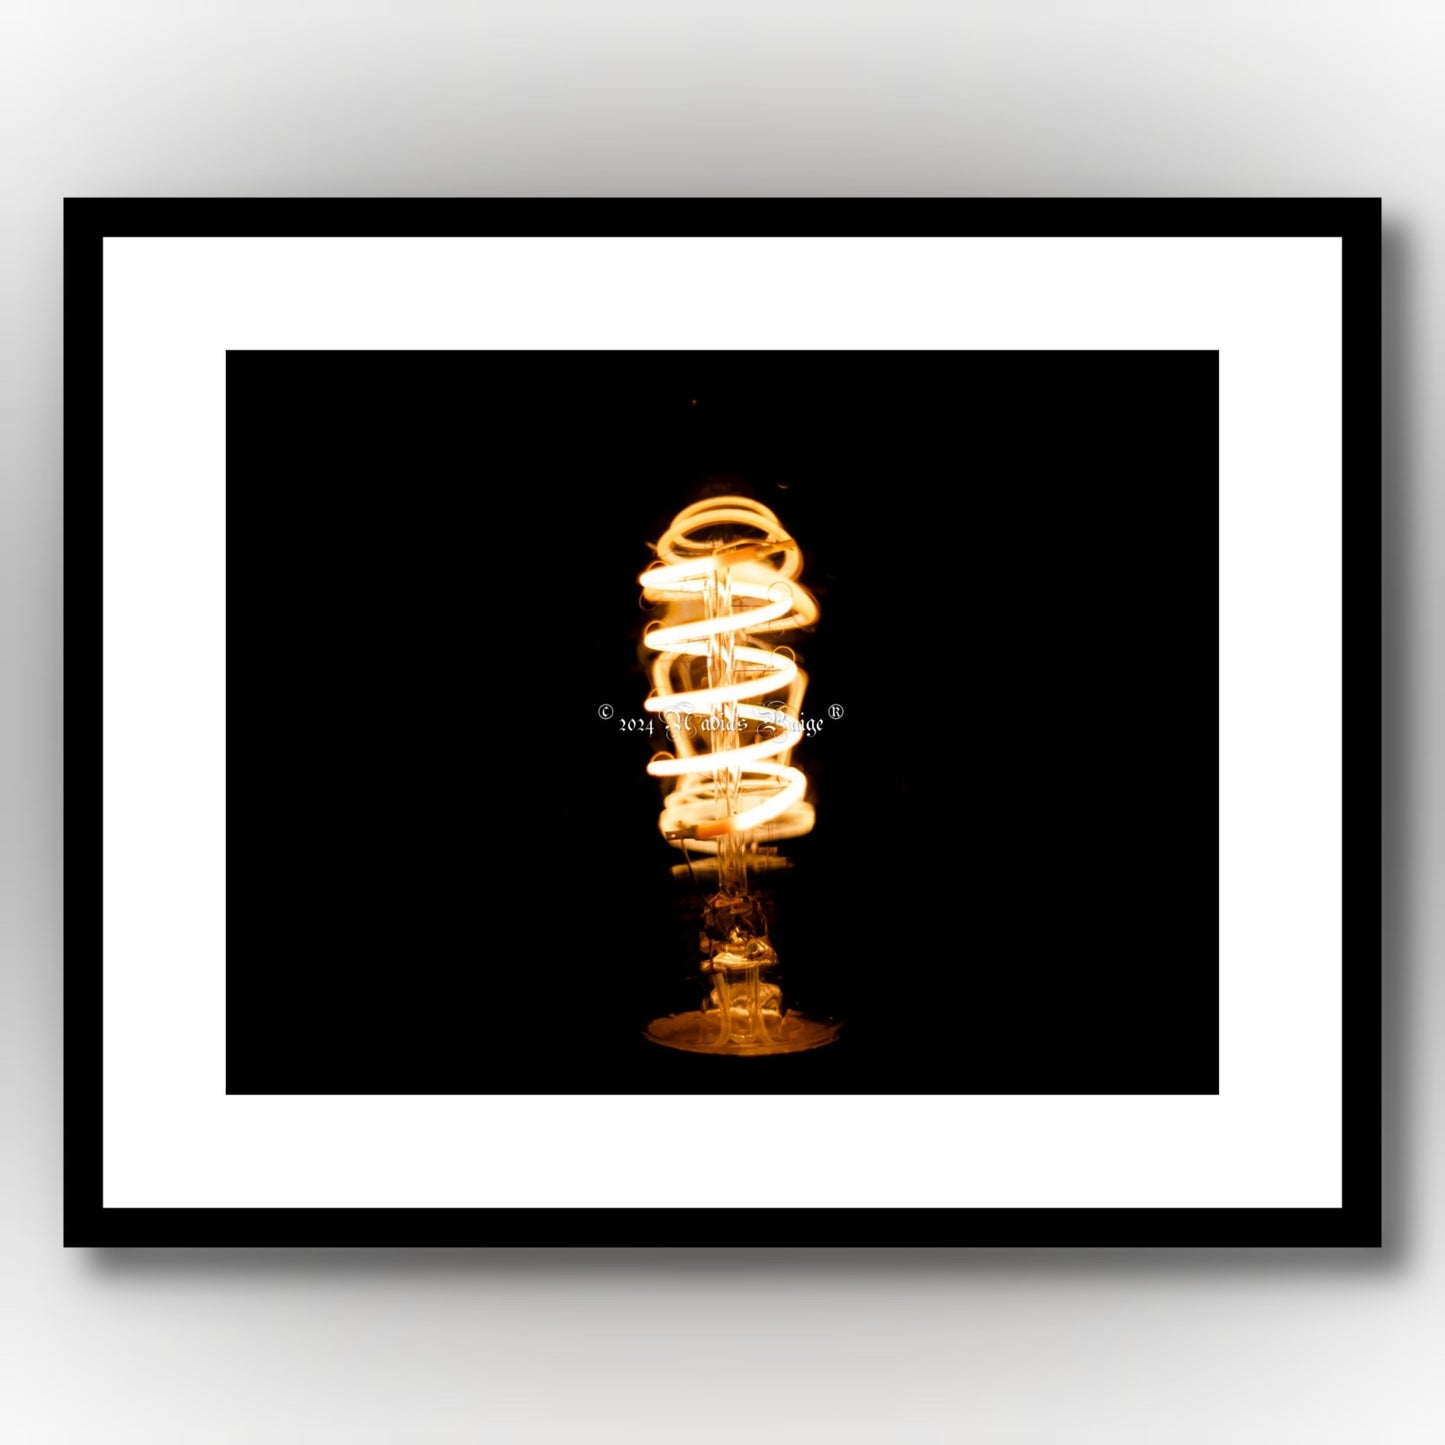 Lightbulb Image 2